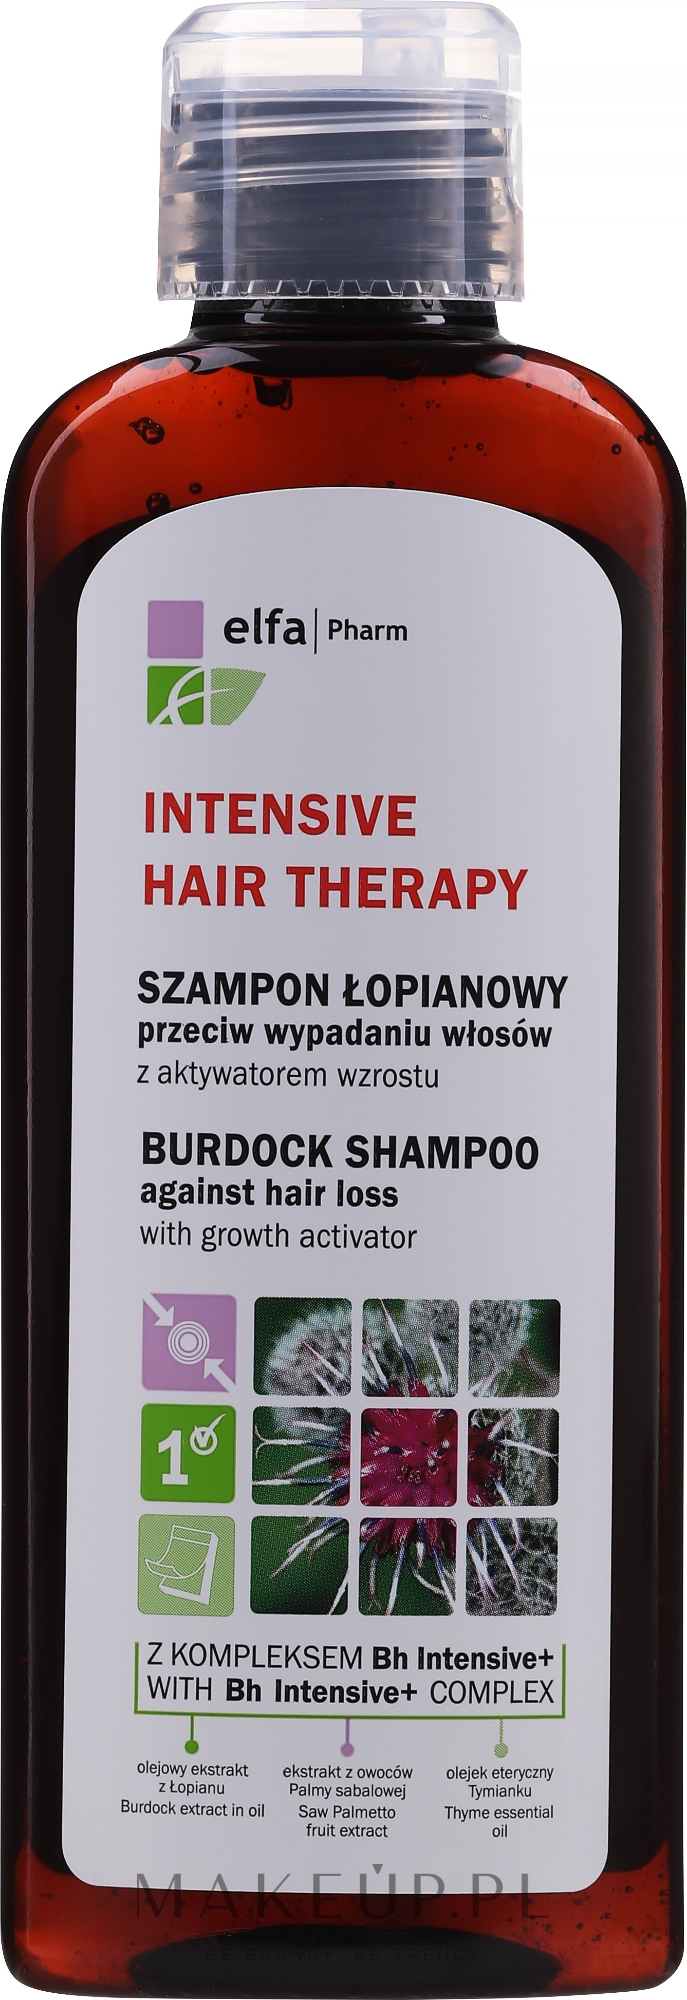 elfa pharm intensive hair therapy szampon łopianowy przeciw wypadaniu włosów